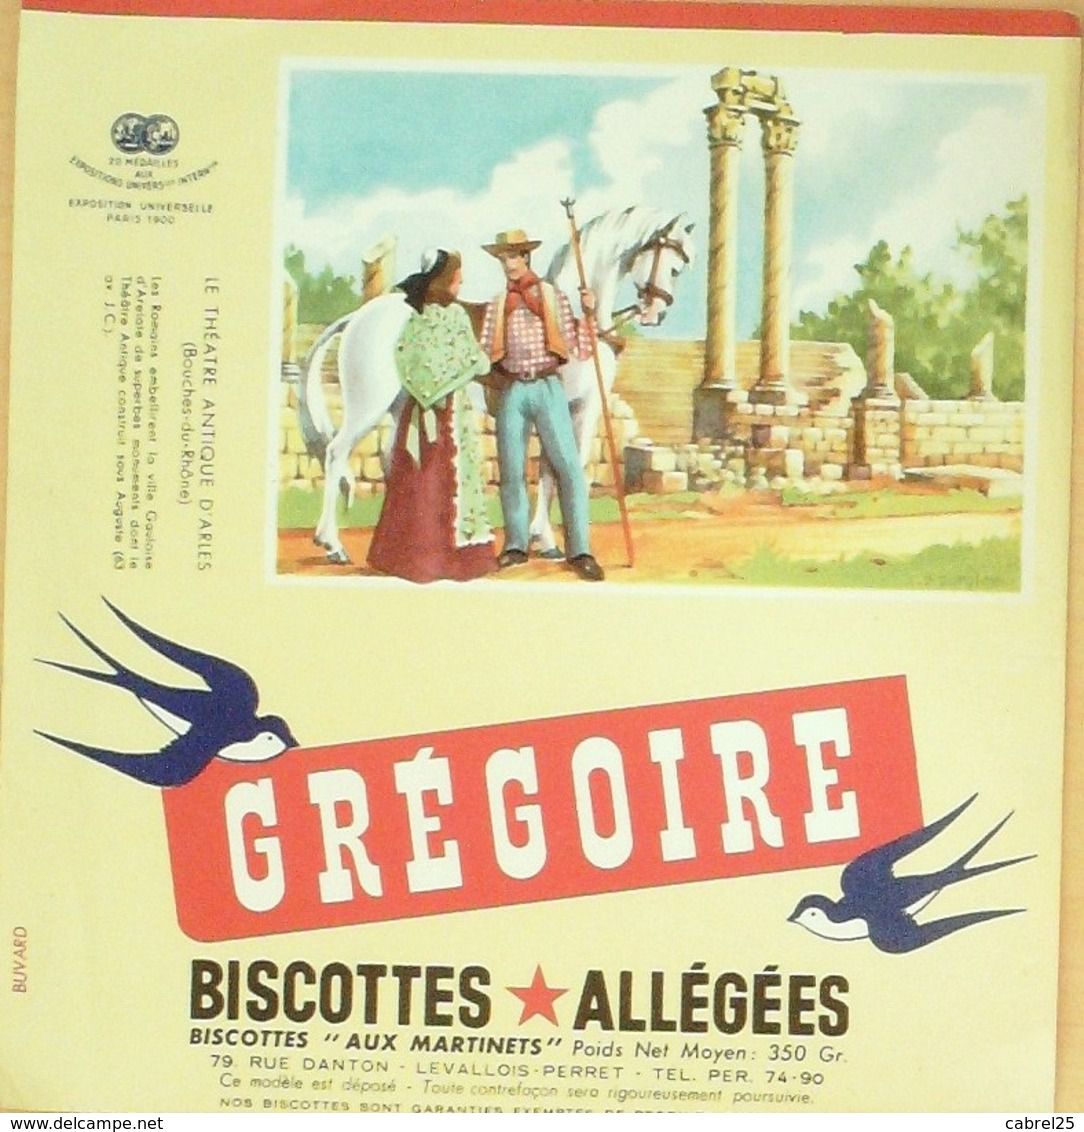 GRÉGOIRE Buvard publicitaire biscottes Allégées Levallois Perret /Protége Cahier 